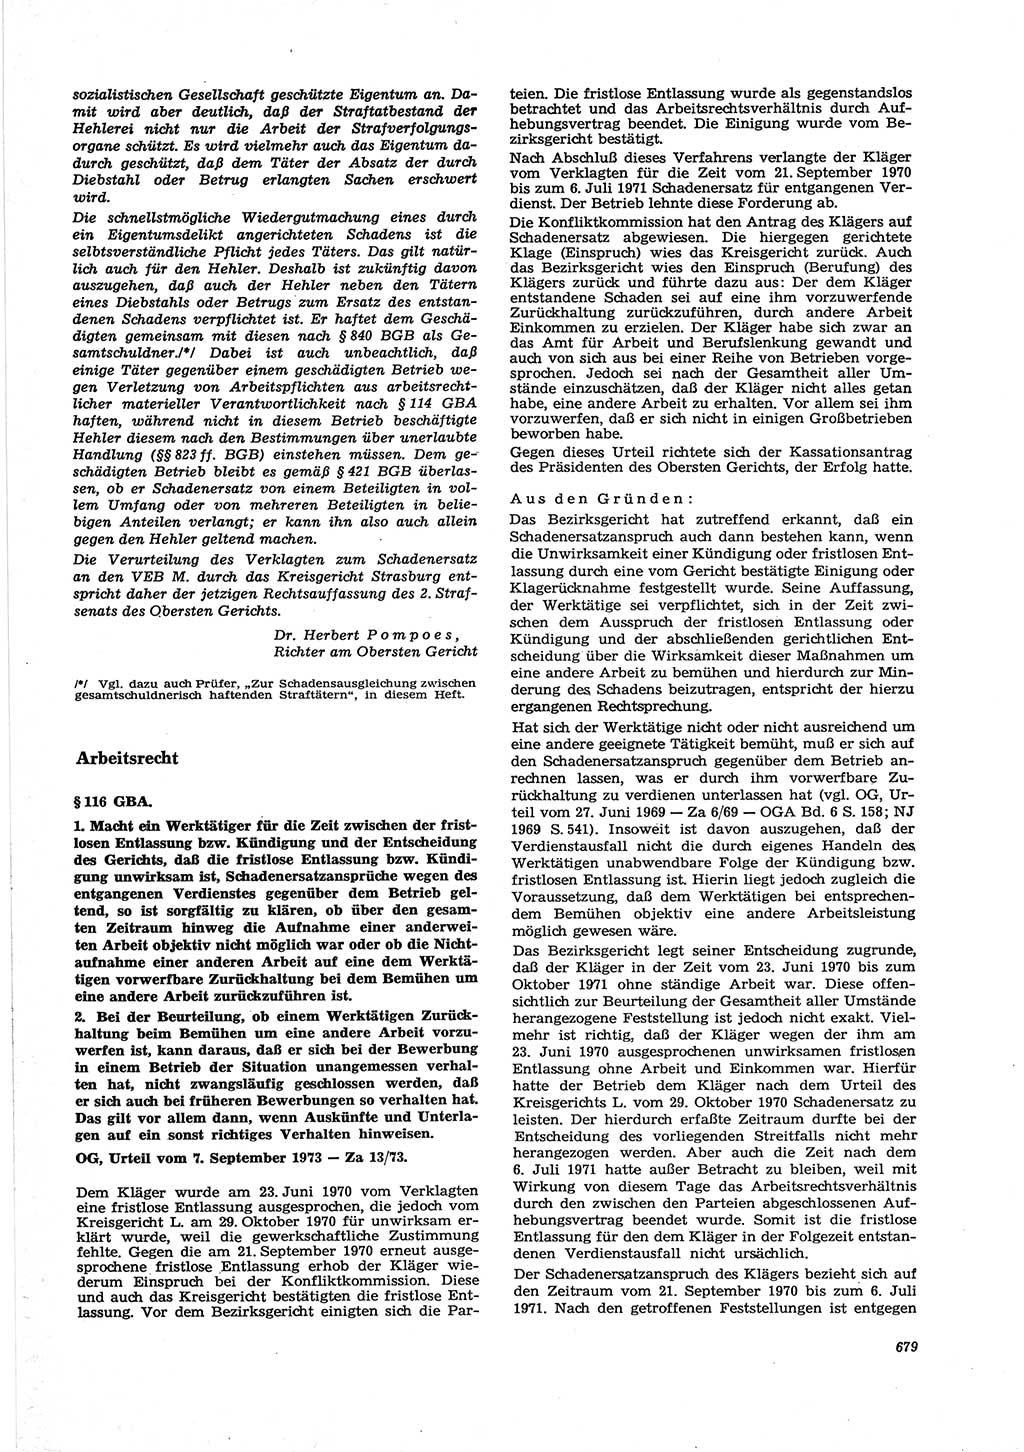 Neue Justiz (NJ), Zeitschrift für Recht und Rechtswissenschaft [Deutsche Demokratische Republik (DDR)], 27. Jahrgang 1973, Seite 679 (NJ DDR 1973, S. 679)